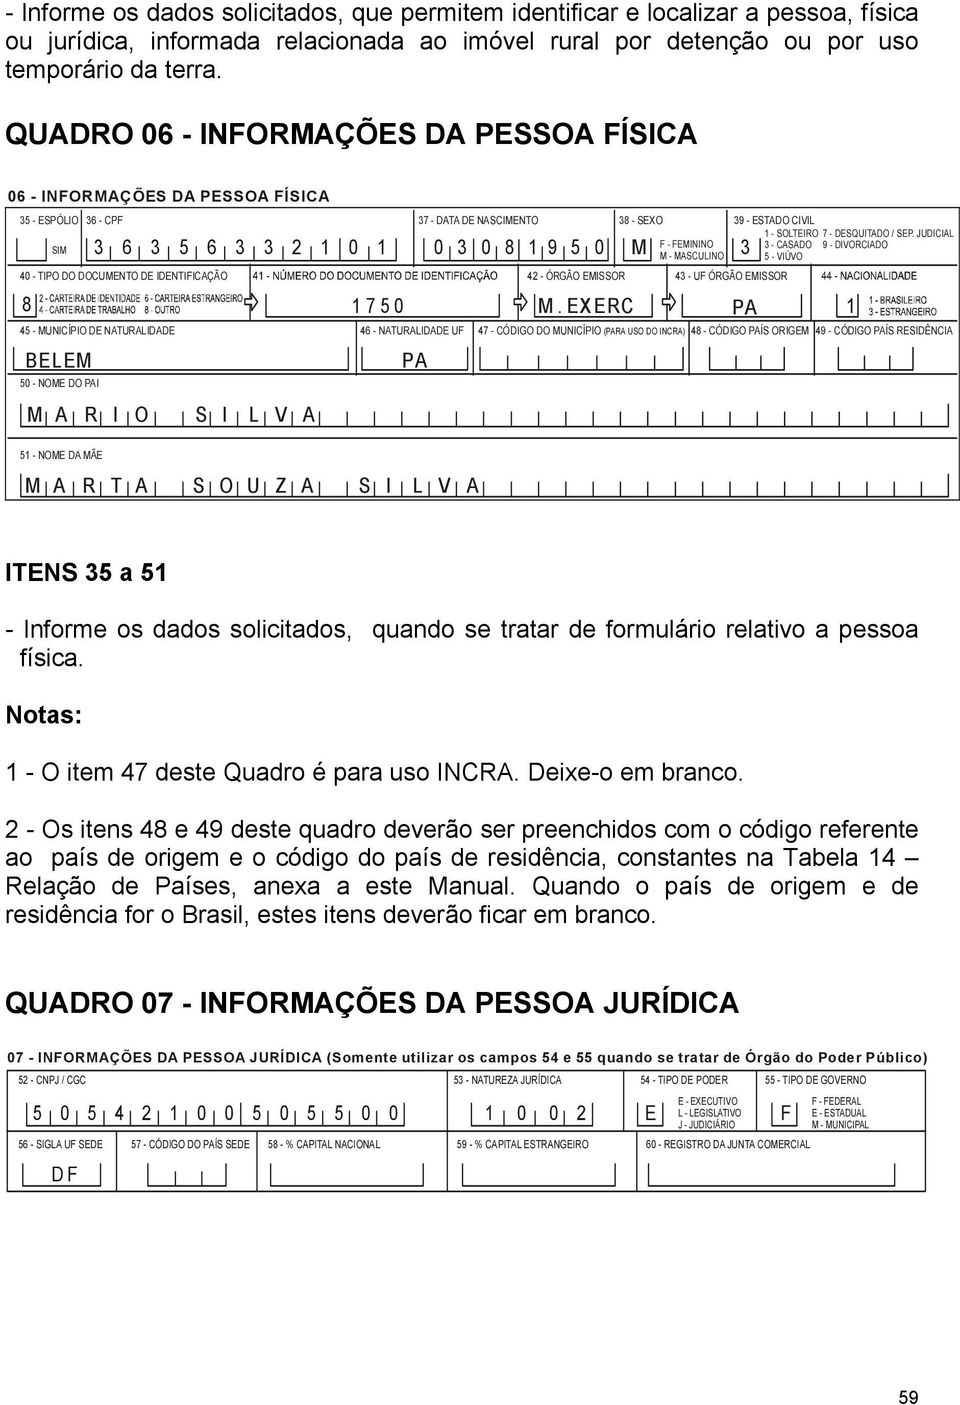 JUDICIAL F - FEMININO M - MASCULINO 3 - CASADO 5 - VIÚVO 9 - DIVORCIADO 40 - TIPO DO DOCUMENTO DE IDENTIFICAÇÃO 42 - ÓRGÃO EMISSOR 43 - UF ÓRGÃO EMISSOR 45 - MUNICÍPIO DE NATURALIDADE 46 -